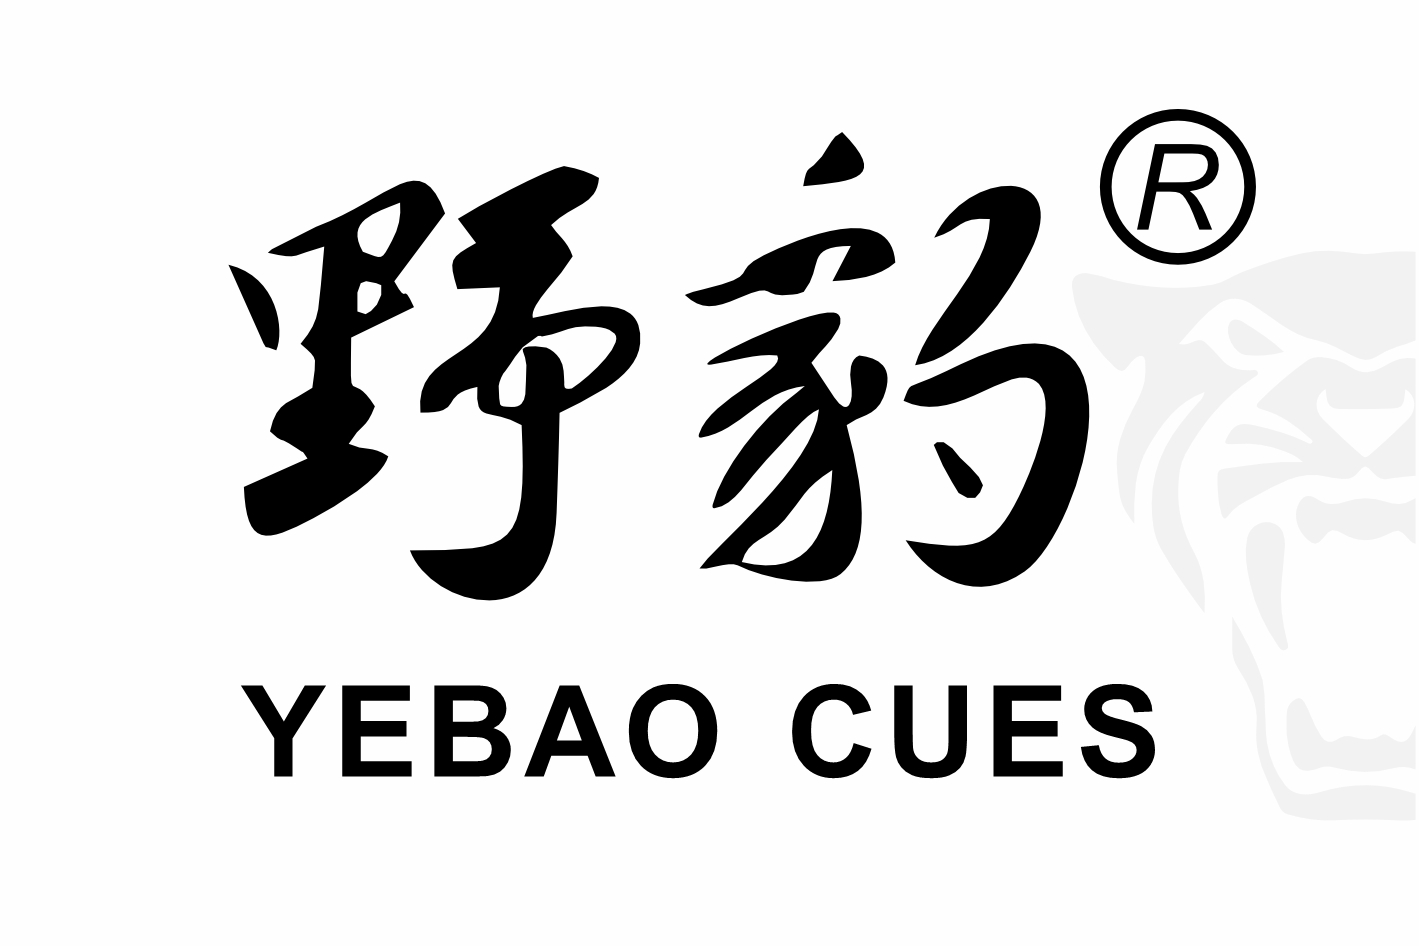  Yebao Cues 